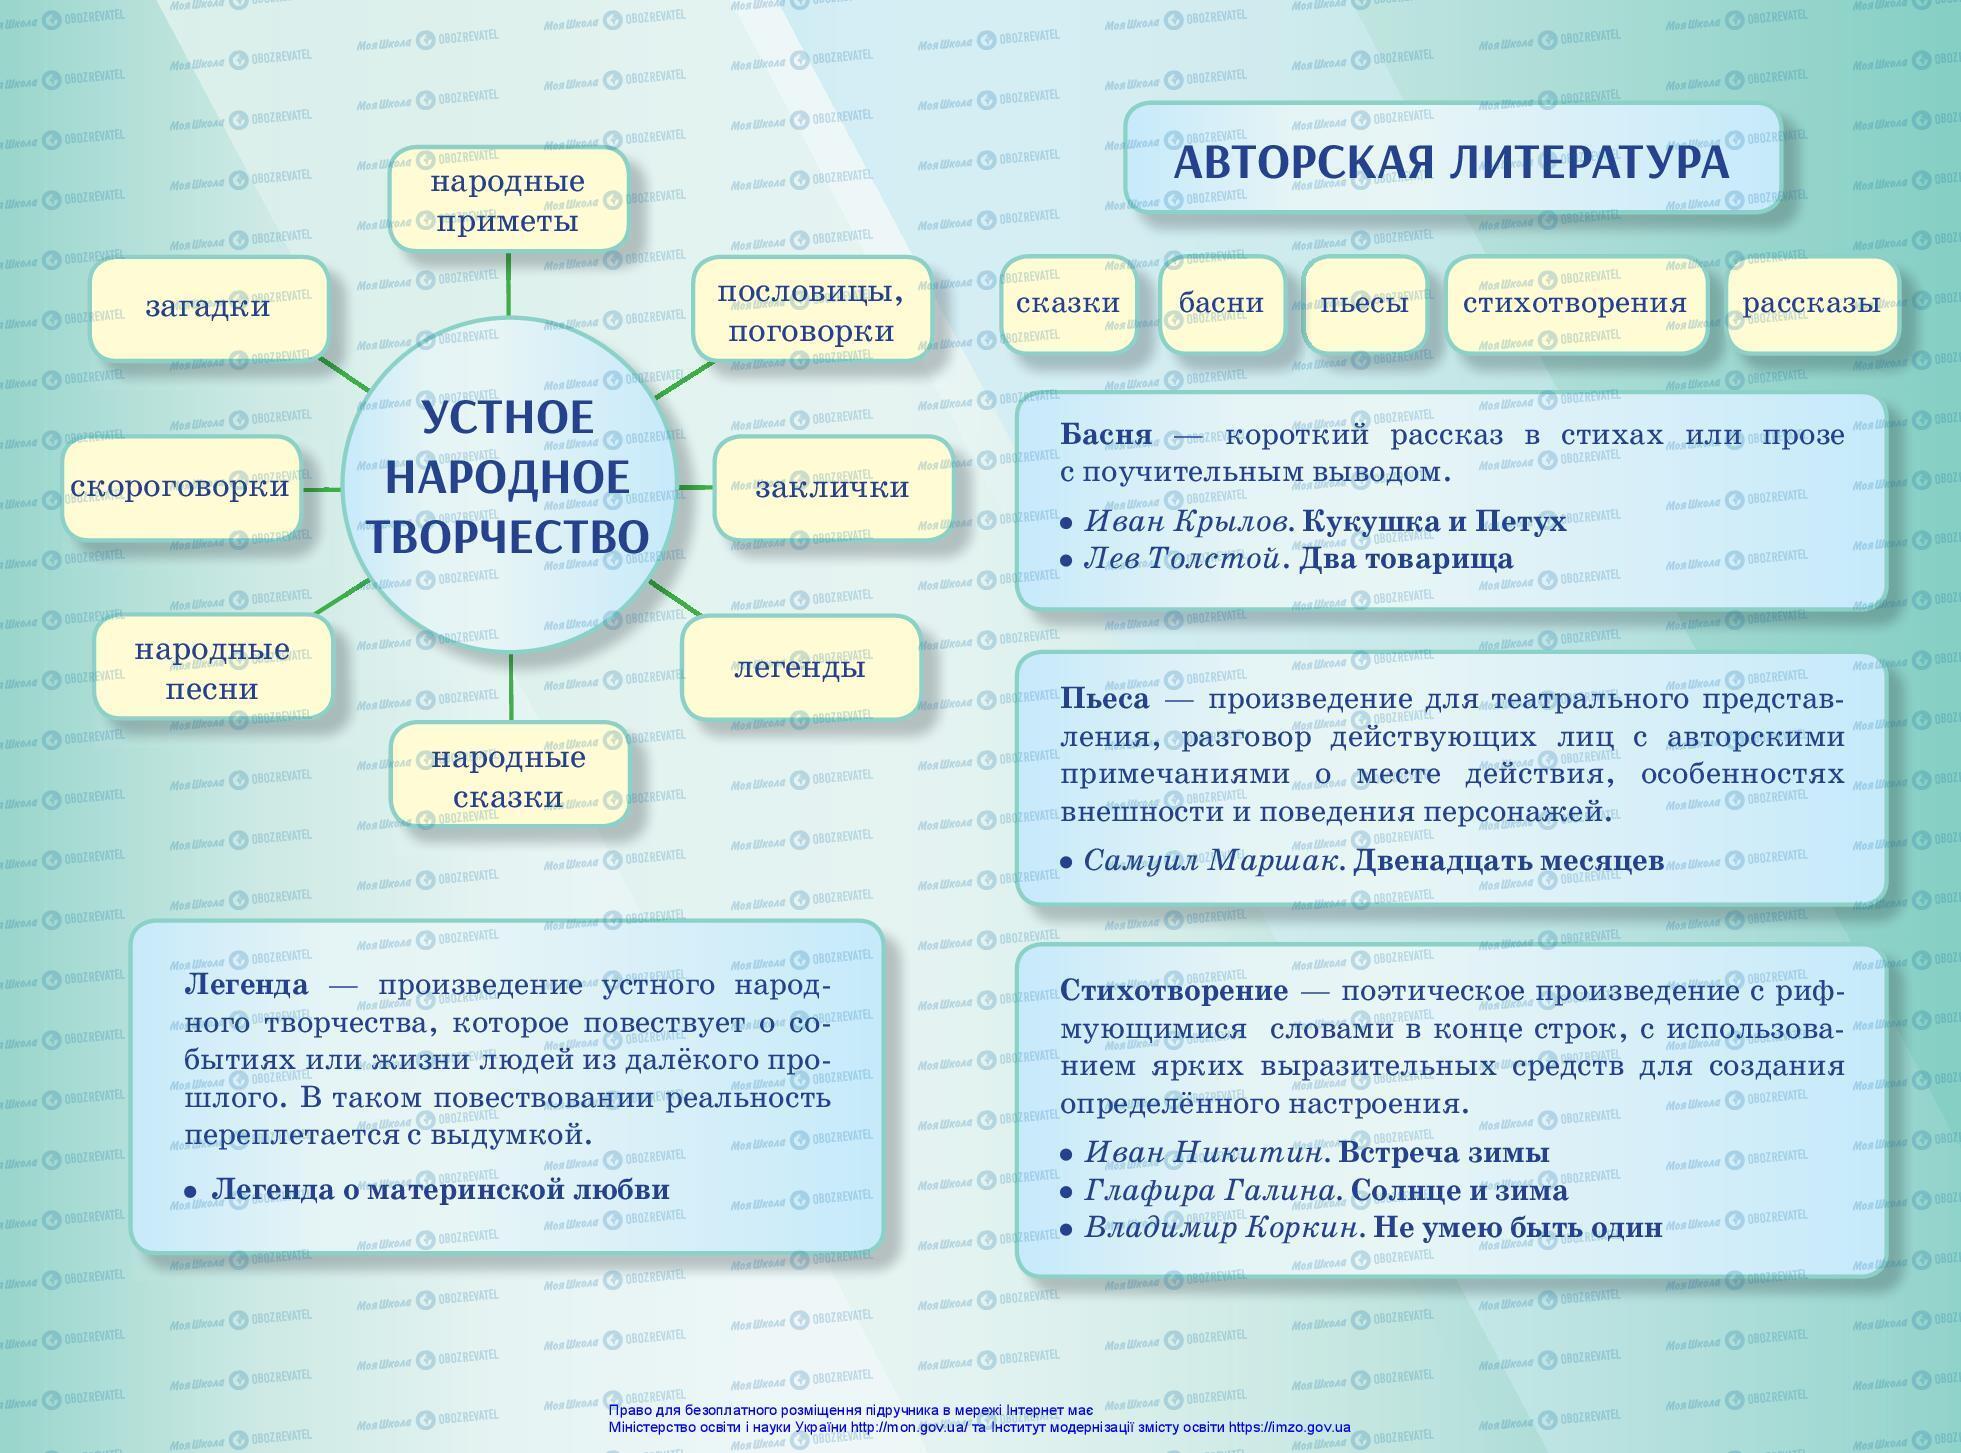 Підручники Російська мова 3 клас сторінка 160